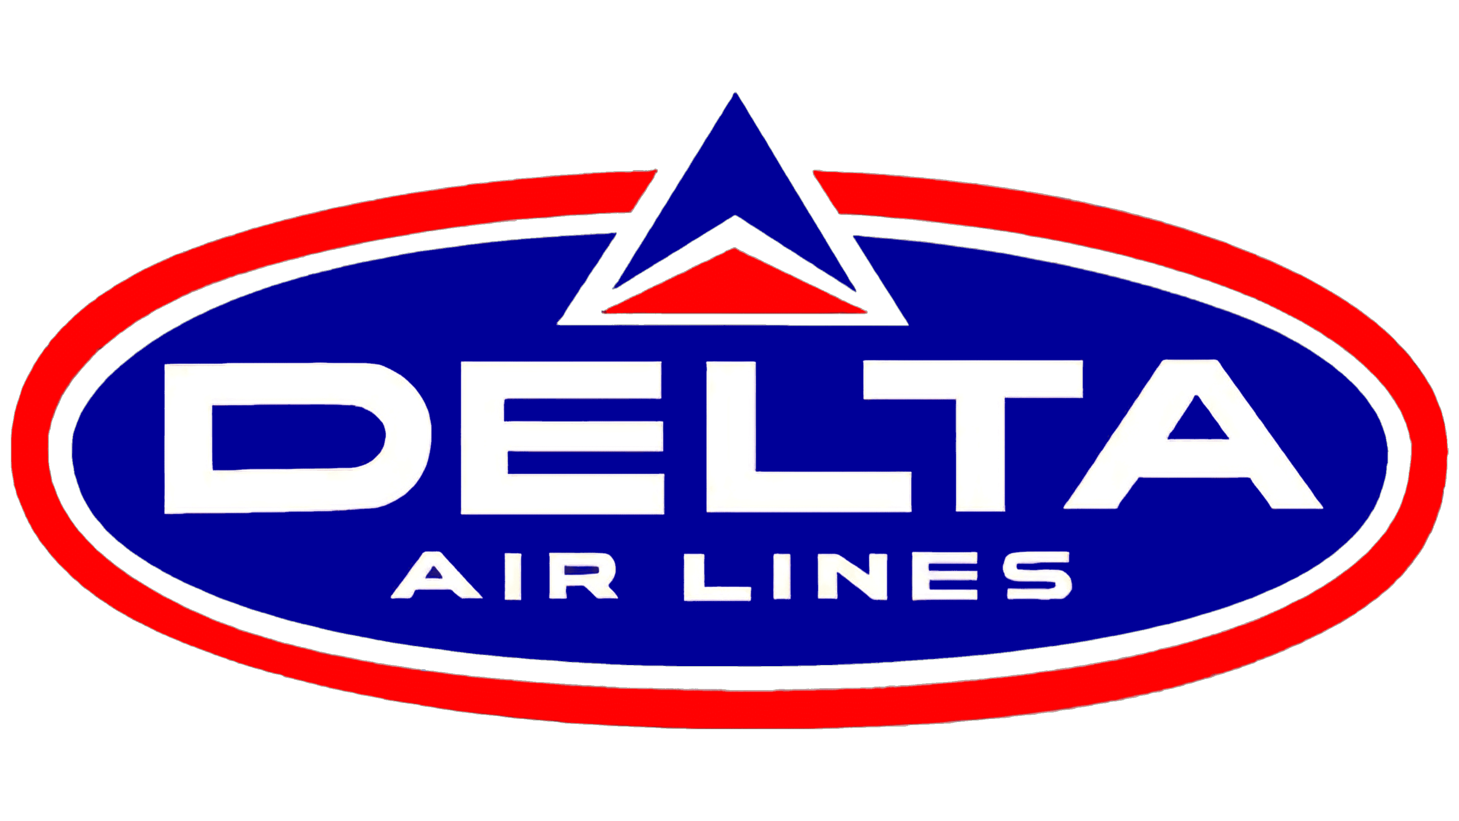 Delta air lines second era sign 1962 1966